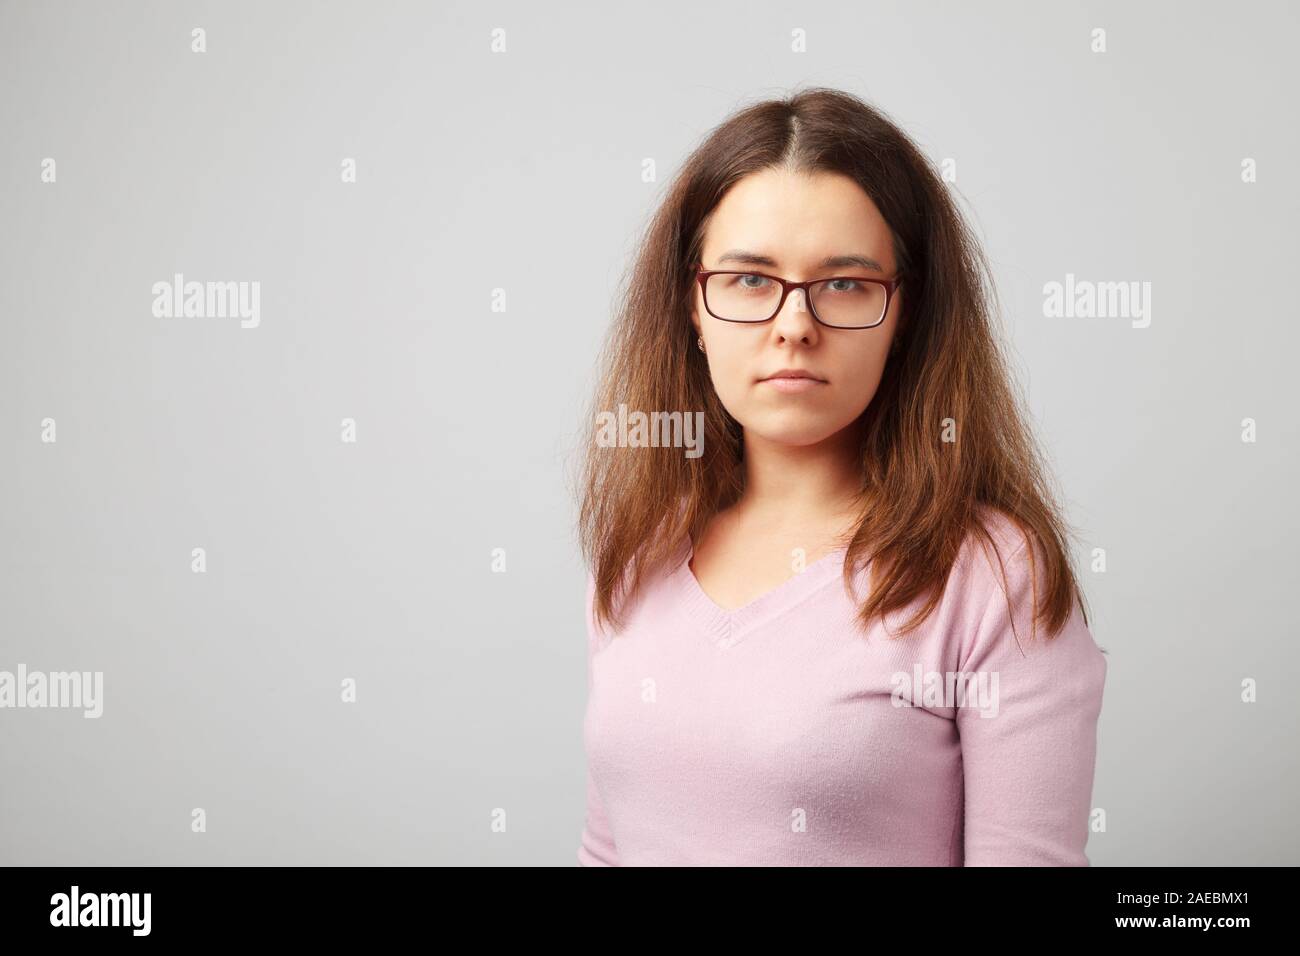 Portrait de la tête et des épaules de jeune femme brune avec des lunettes. Banque D'Images